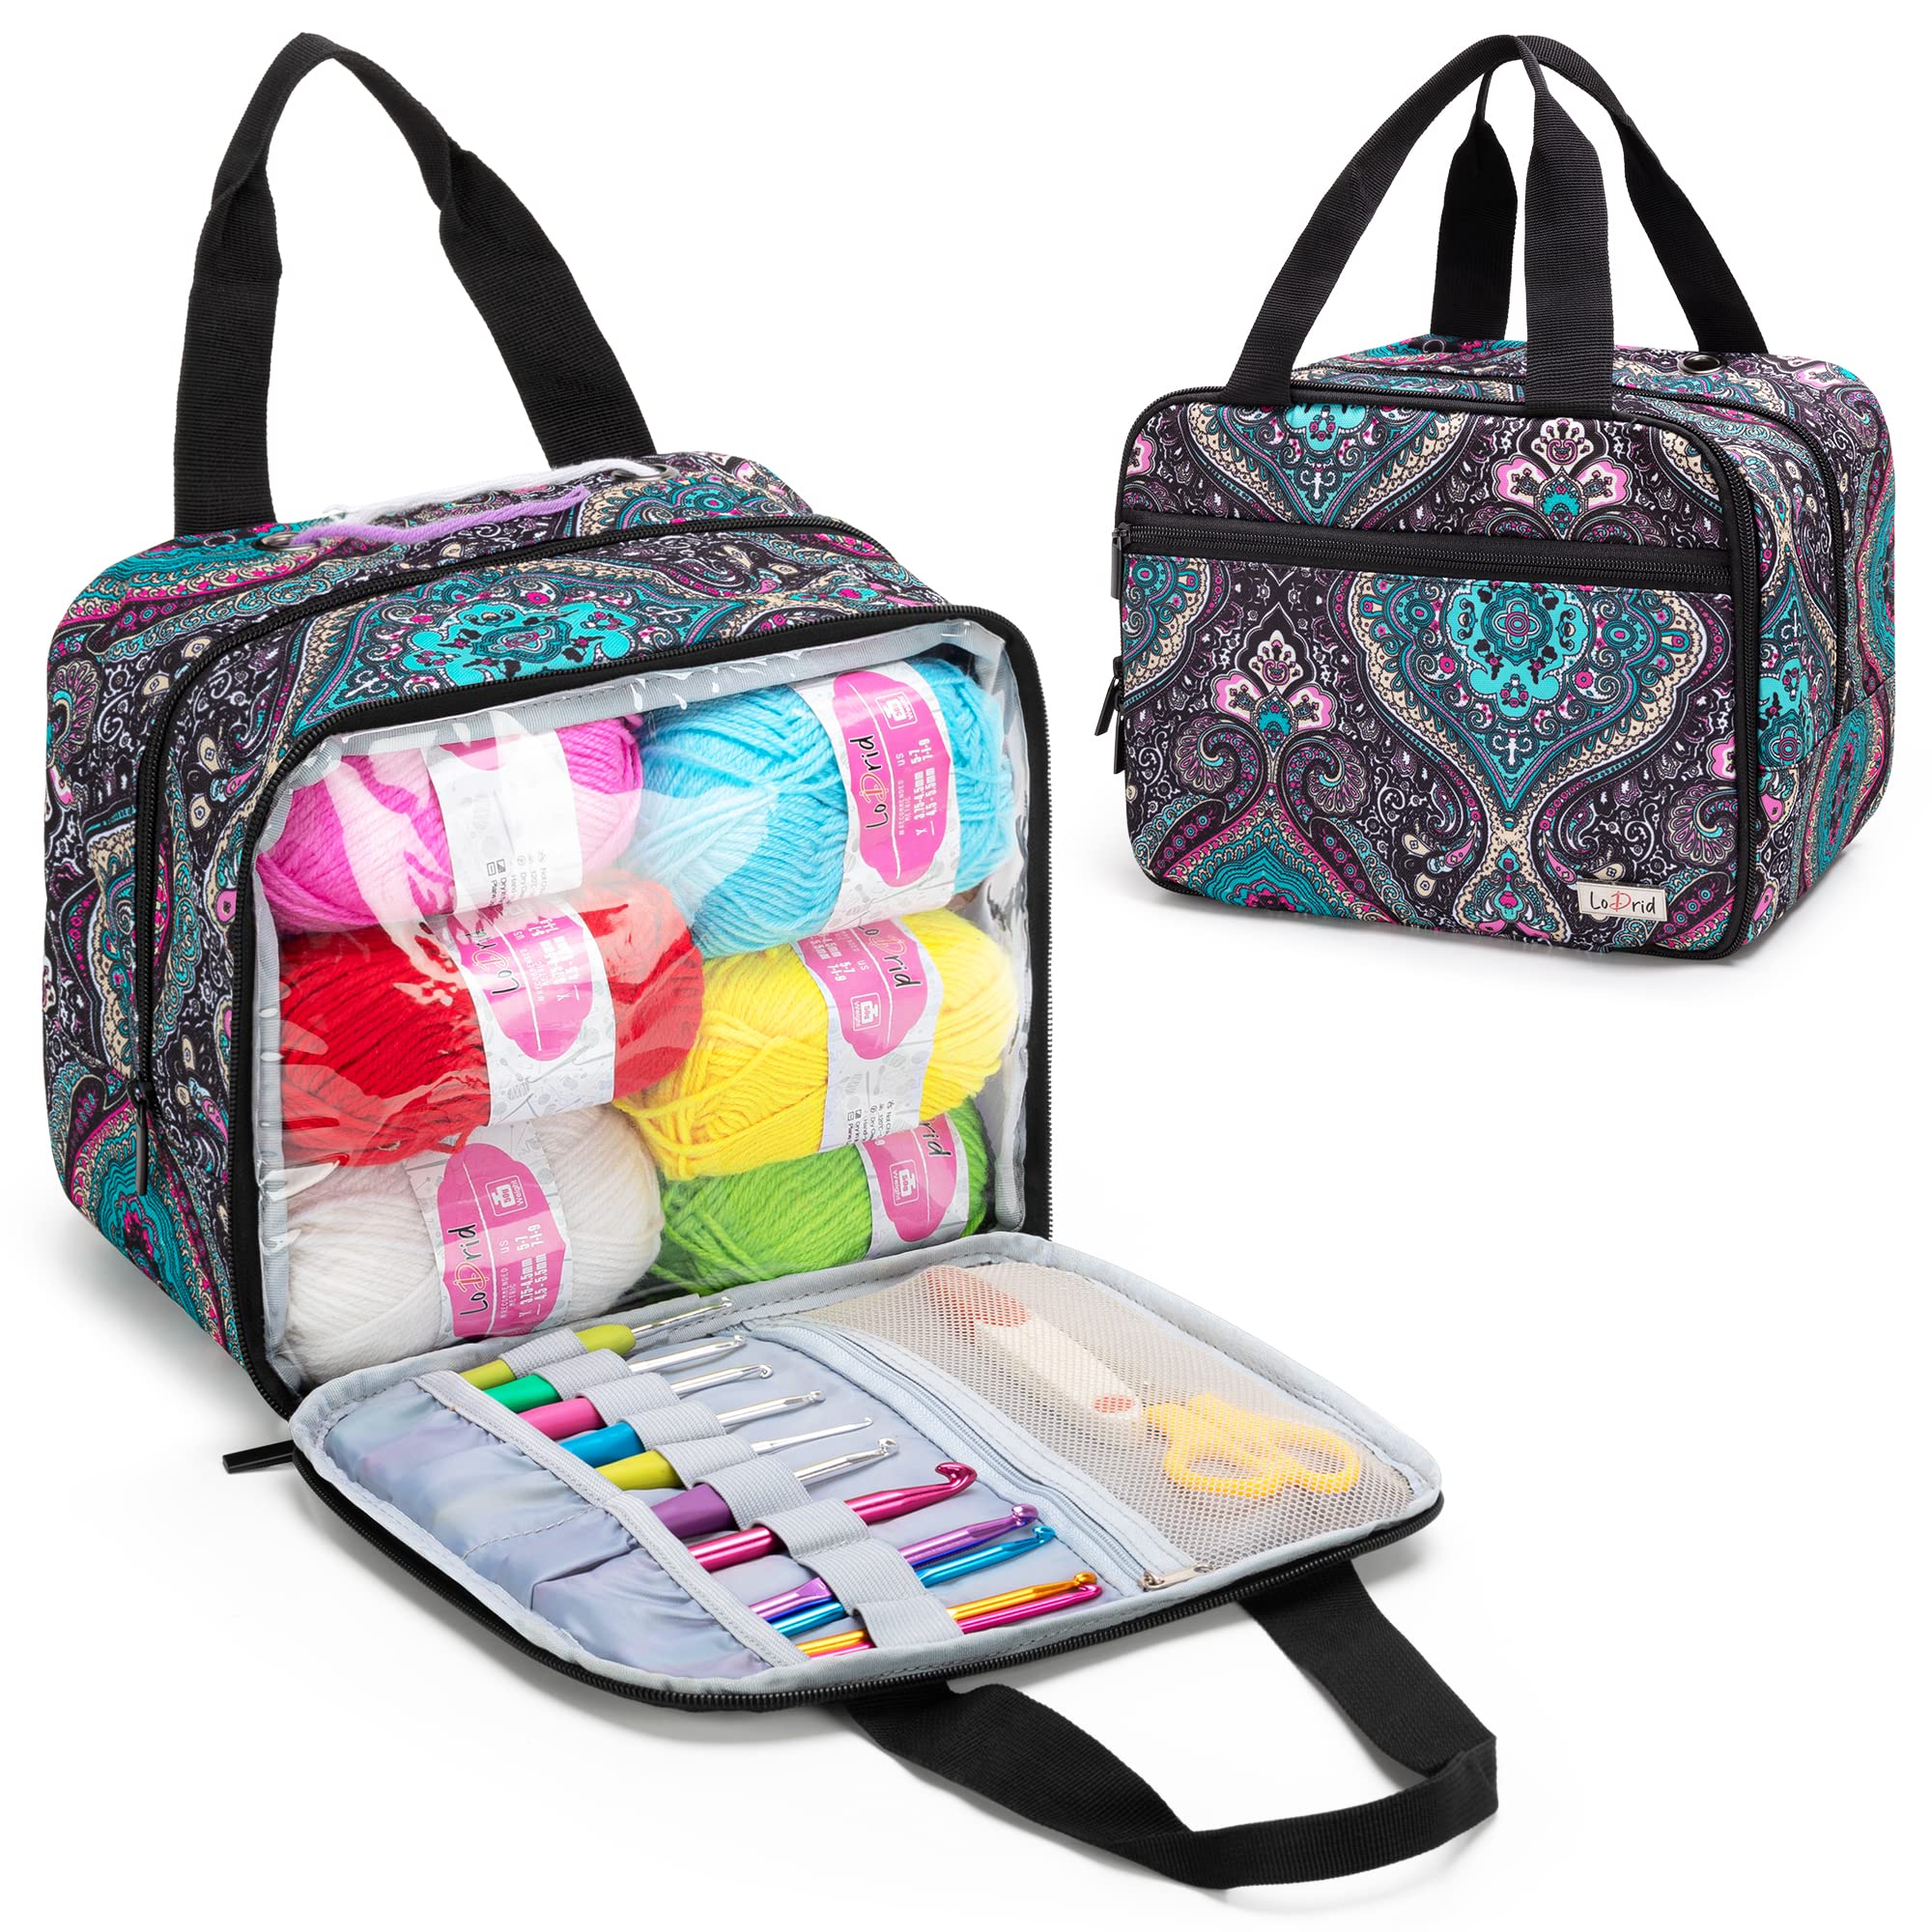  Premium Large Knitting Bag - Yarn Storage Bag for